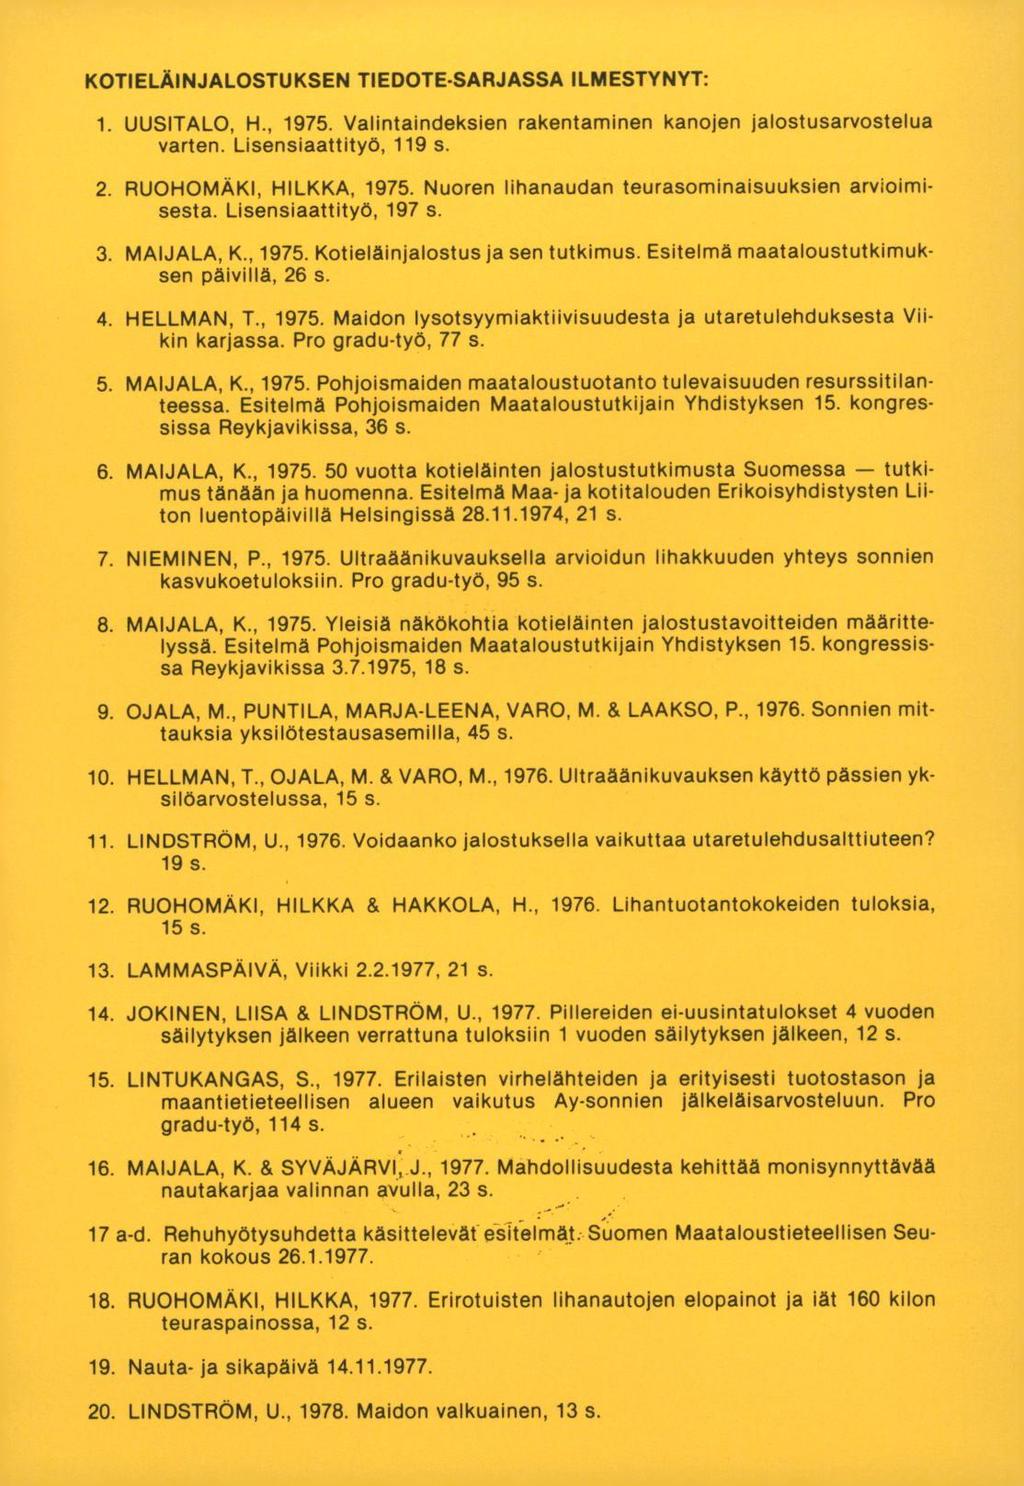 KOTIELÄINJALOSTUKSEN TIEDOTESARJASSA ILMESTYNYT: UUSITALO, H., 1975. Valintaindeksien rakentaminen kanojen jalostusarvostelua varten. Lisensiaattityö, 119 s. RUOHOMÄKI, HILKKA, 1975.